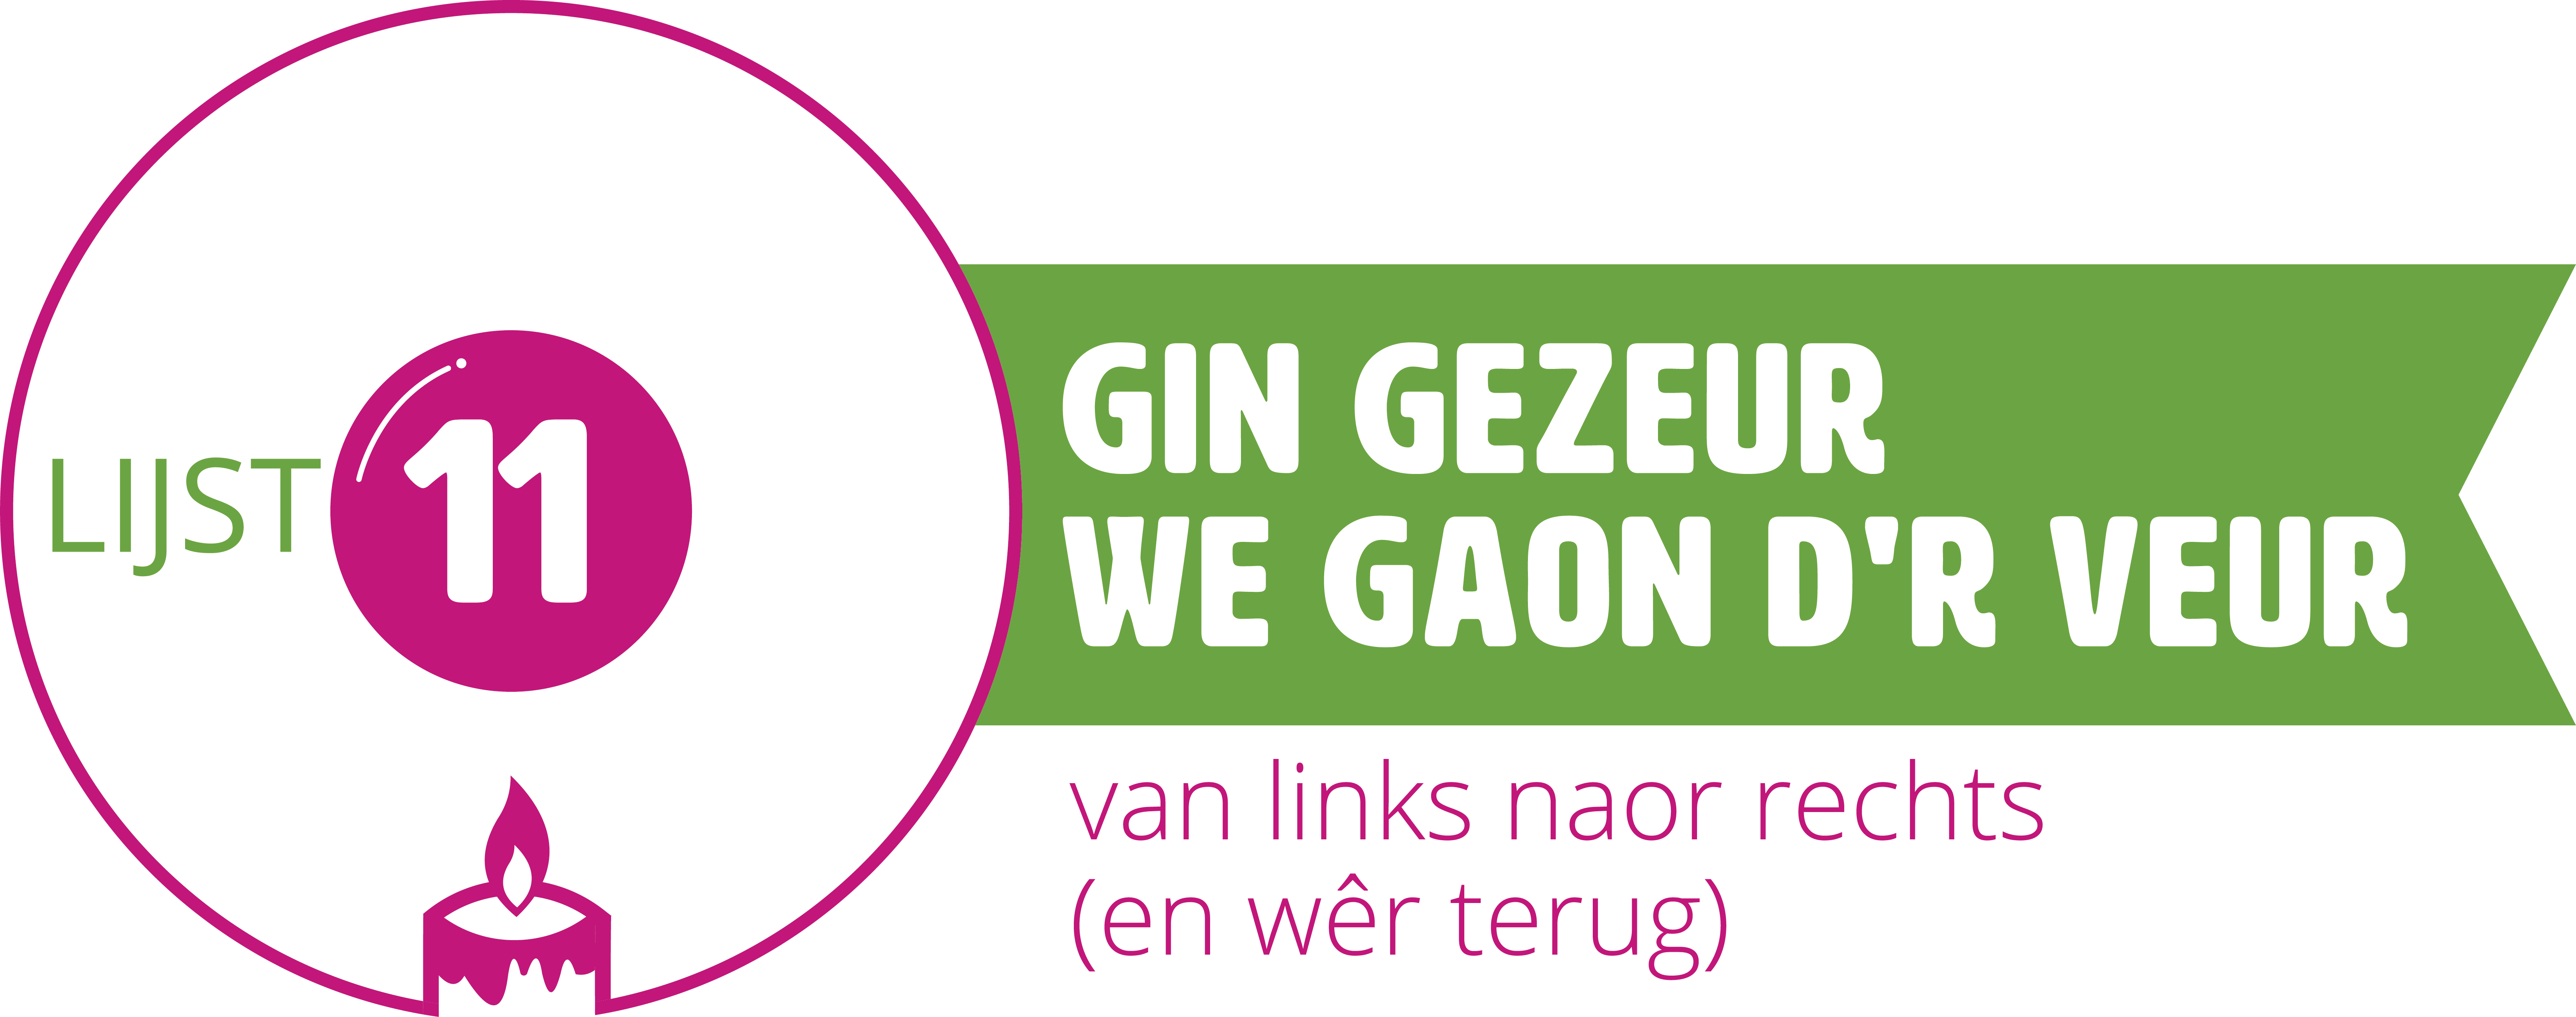 https://www.gentenarren.nl/write/Afbeeldingen1/Evenementen/LOGO_GGWGDV.png?preset=newsletter